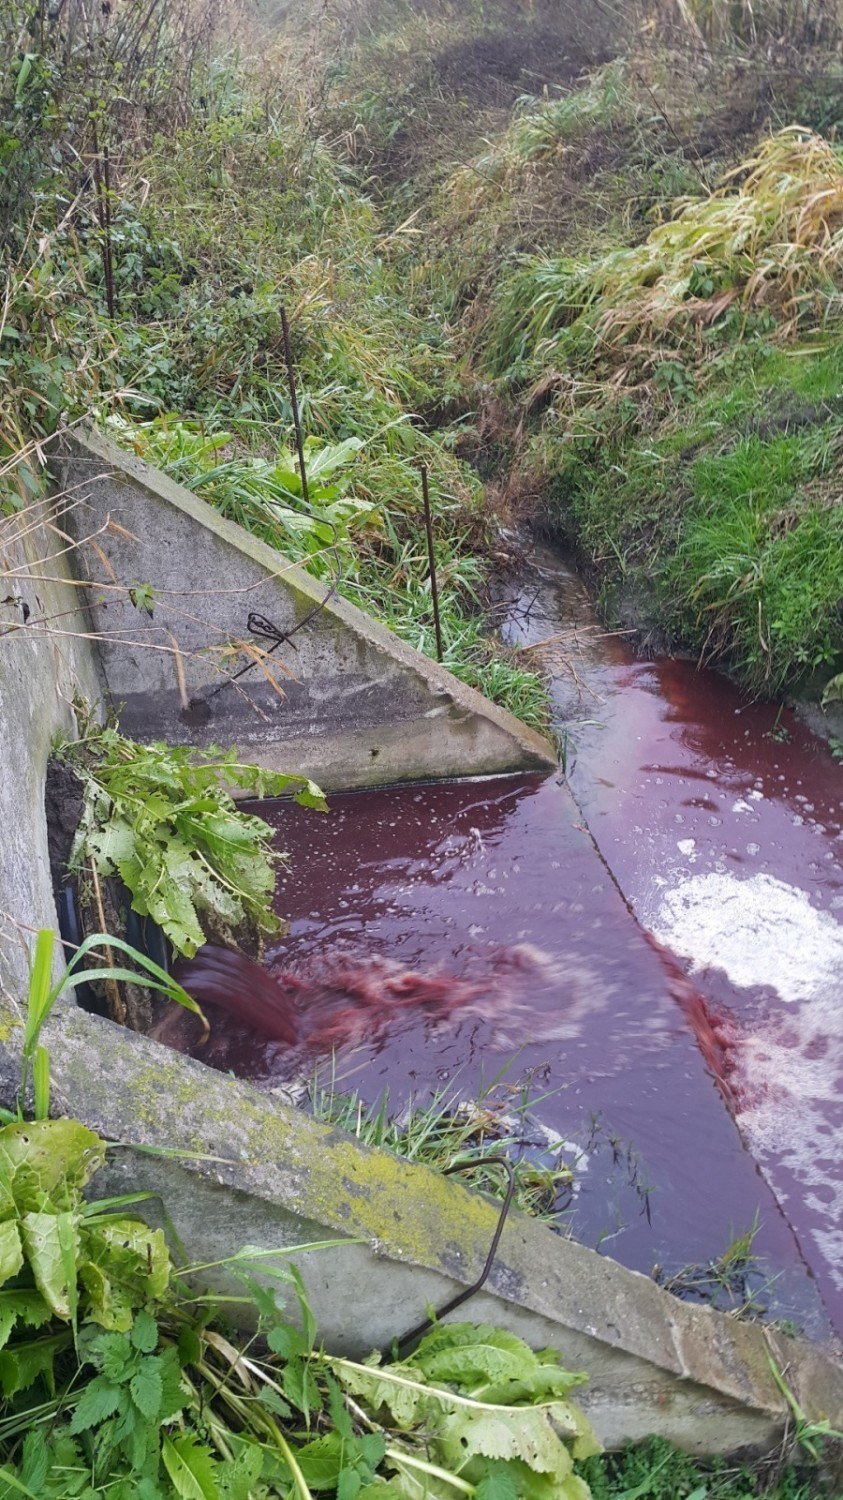 Krew z uboju wyciekła do rzeki. Mieszkańcy zawiadomili o tym prokuraturę